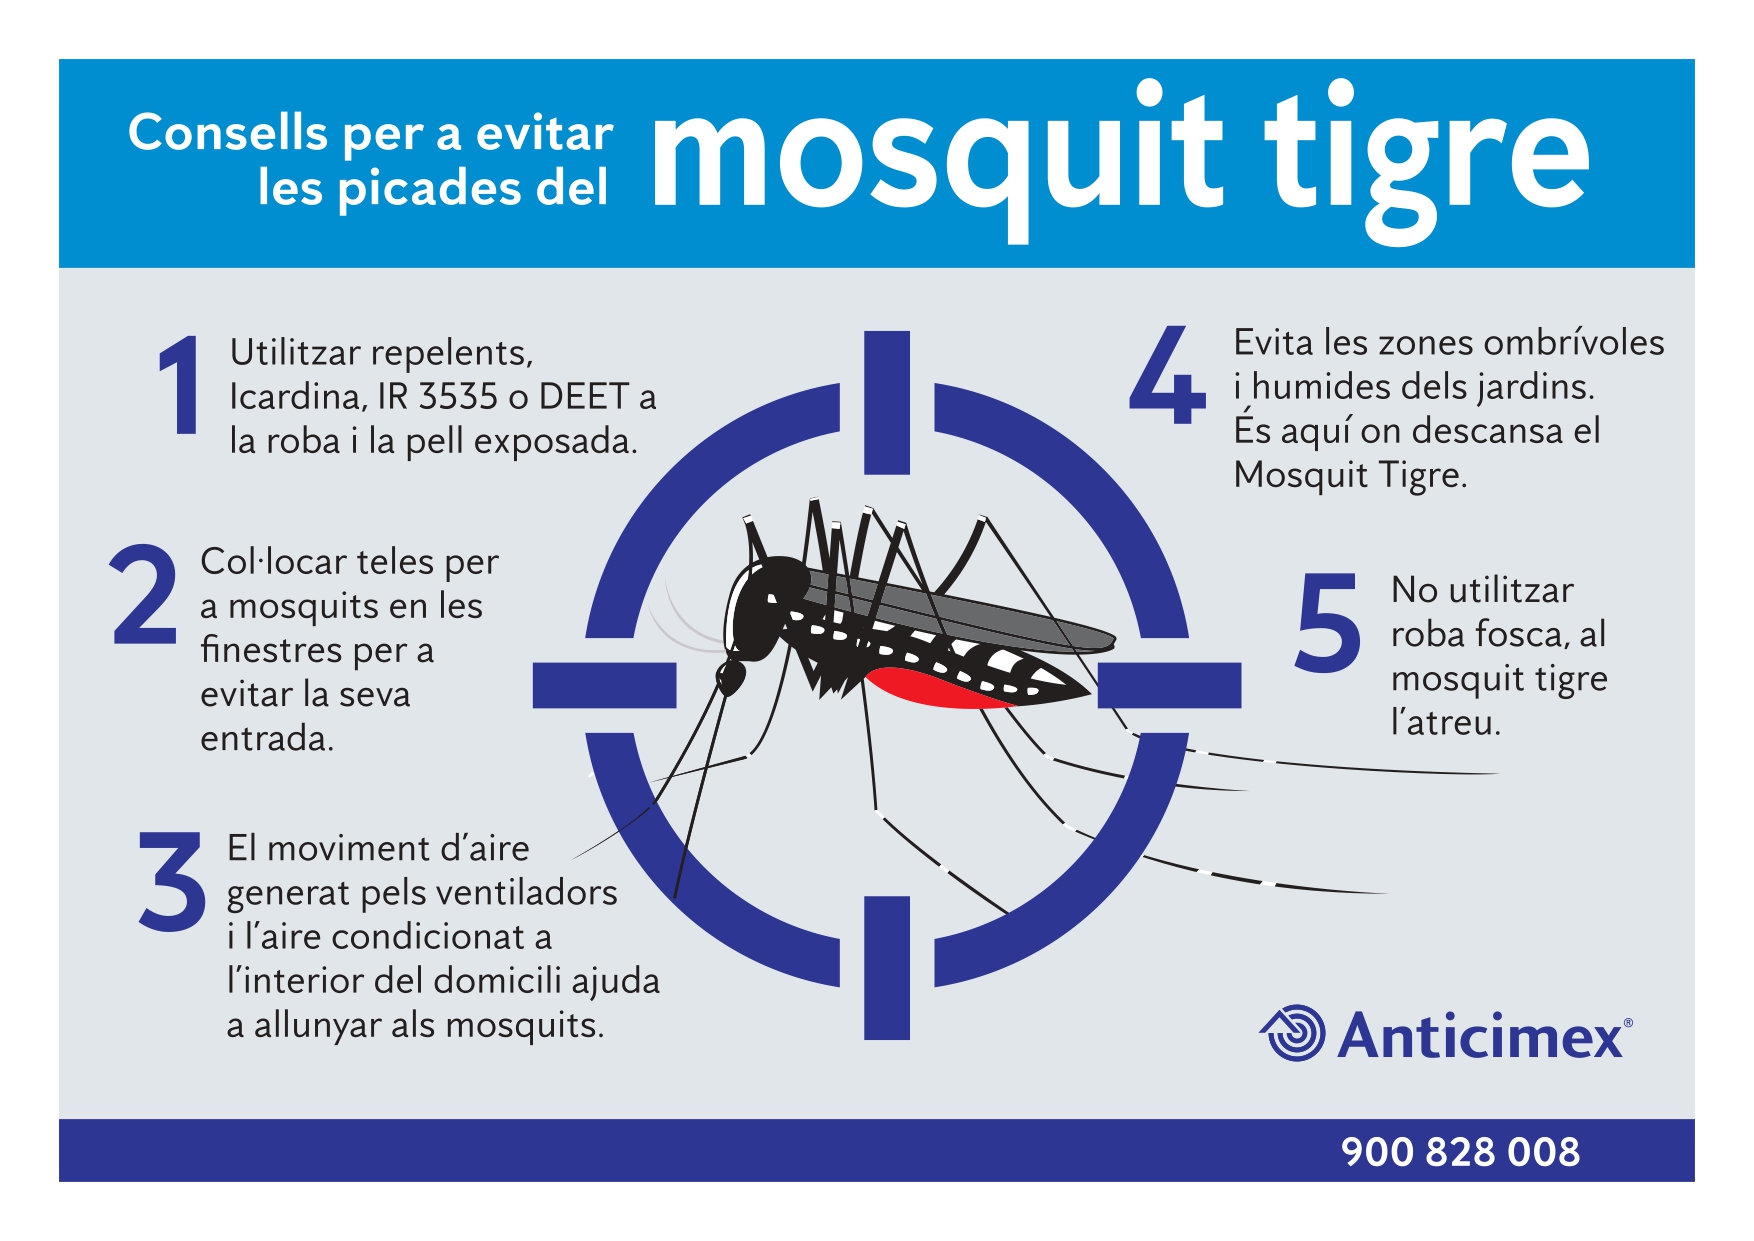 Consells per evitar el mosquit tigre